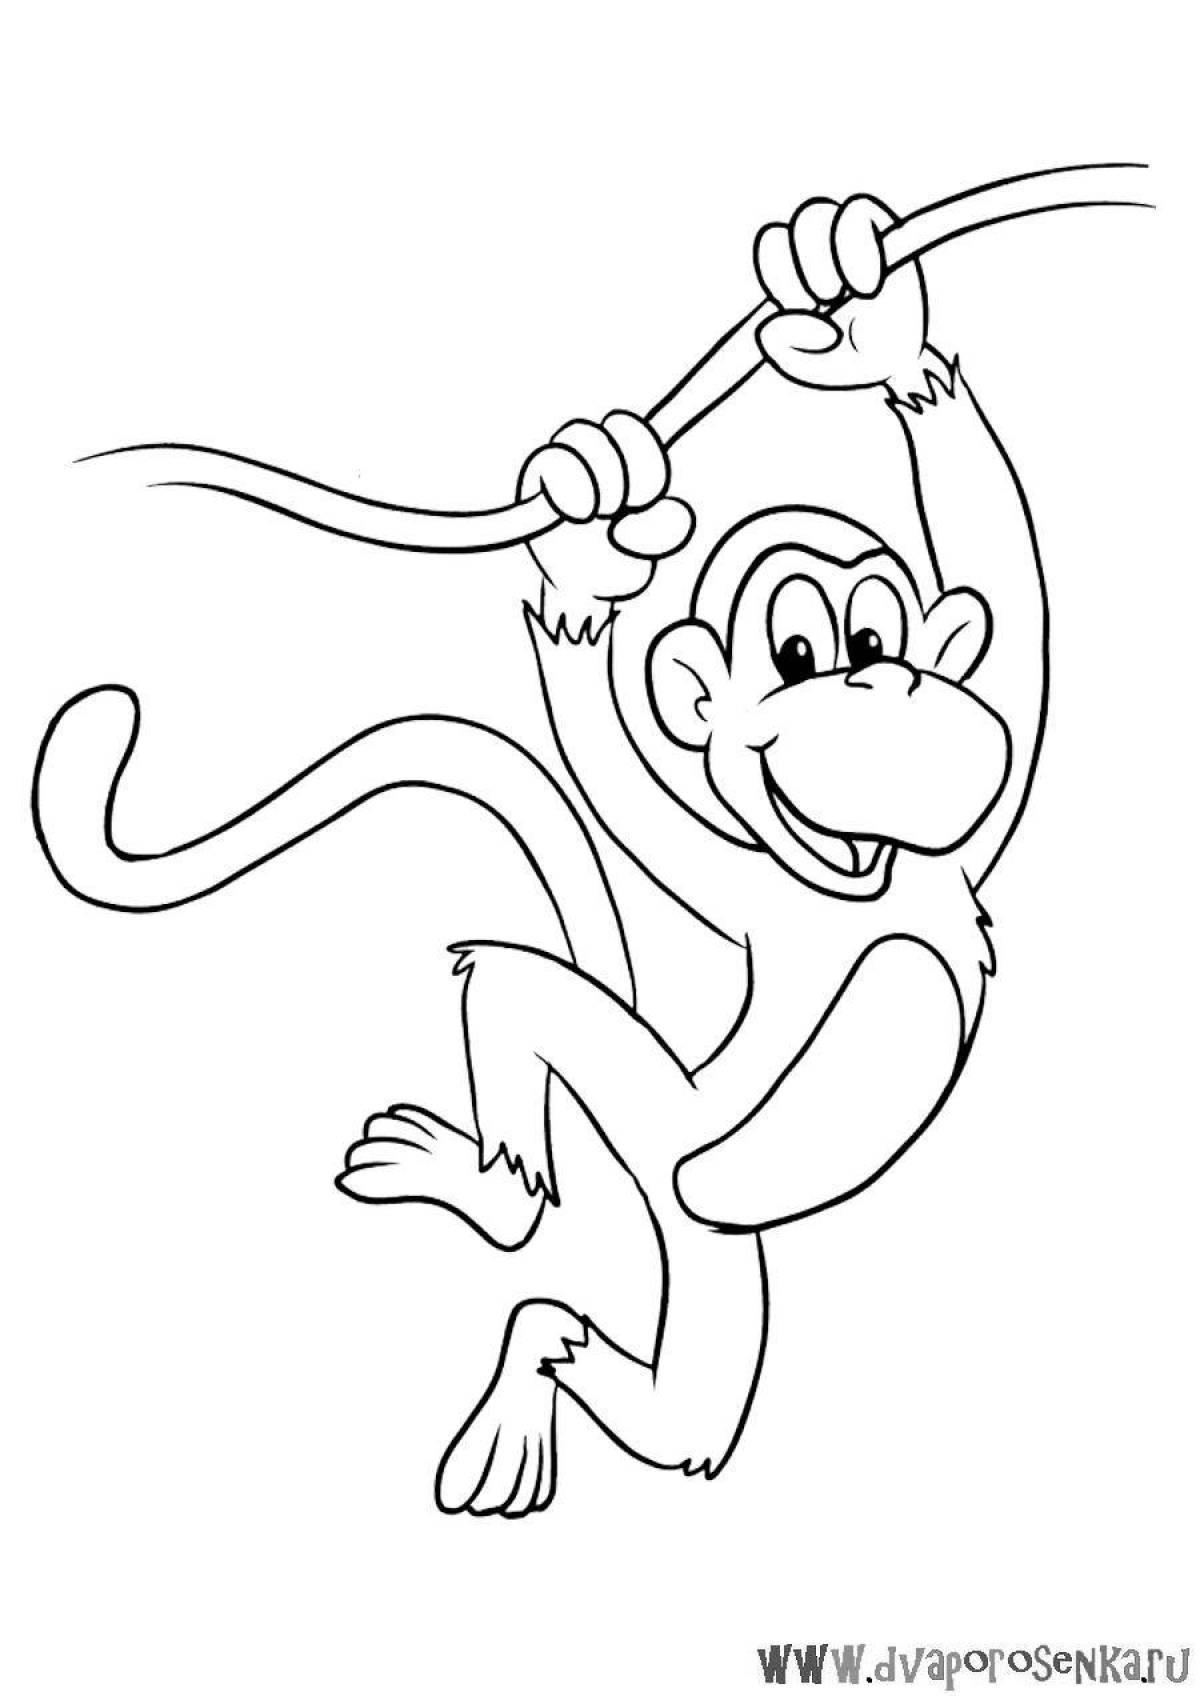 Фото по запросу Раскраска обезьяна